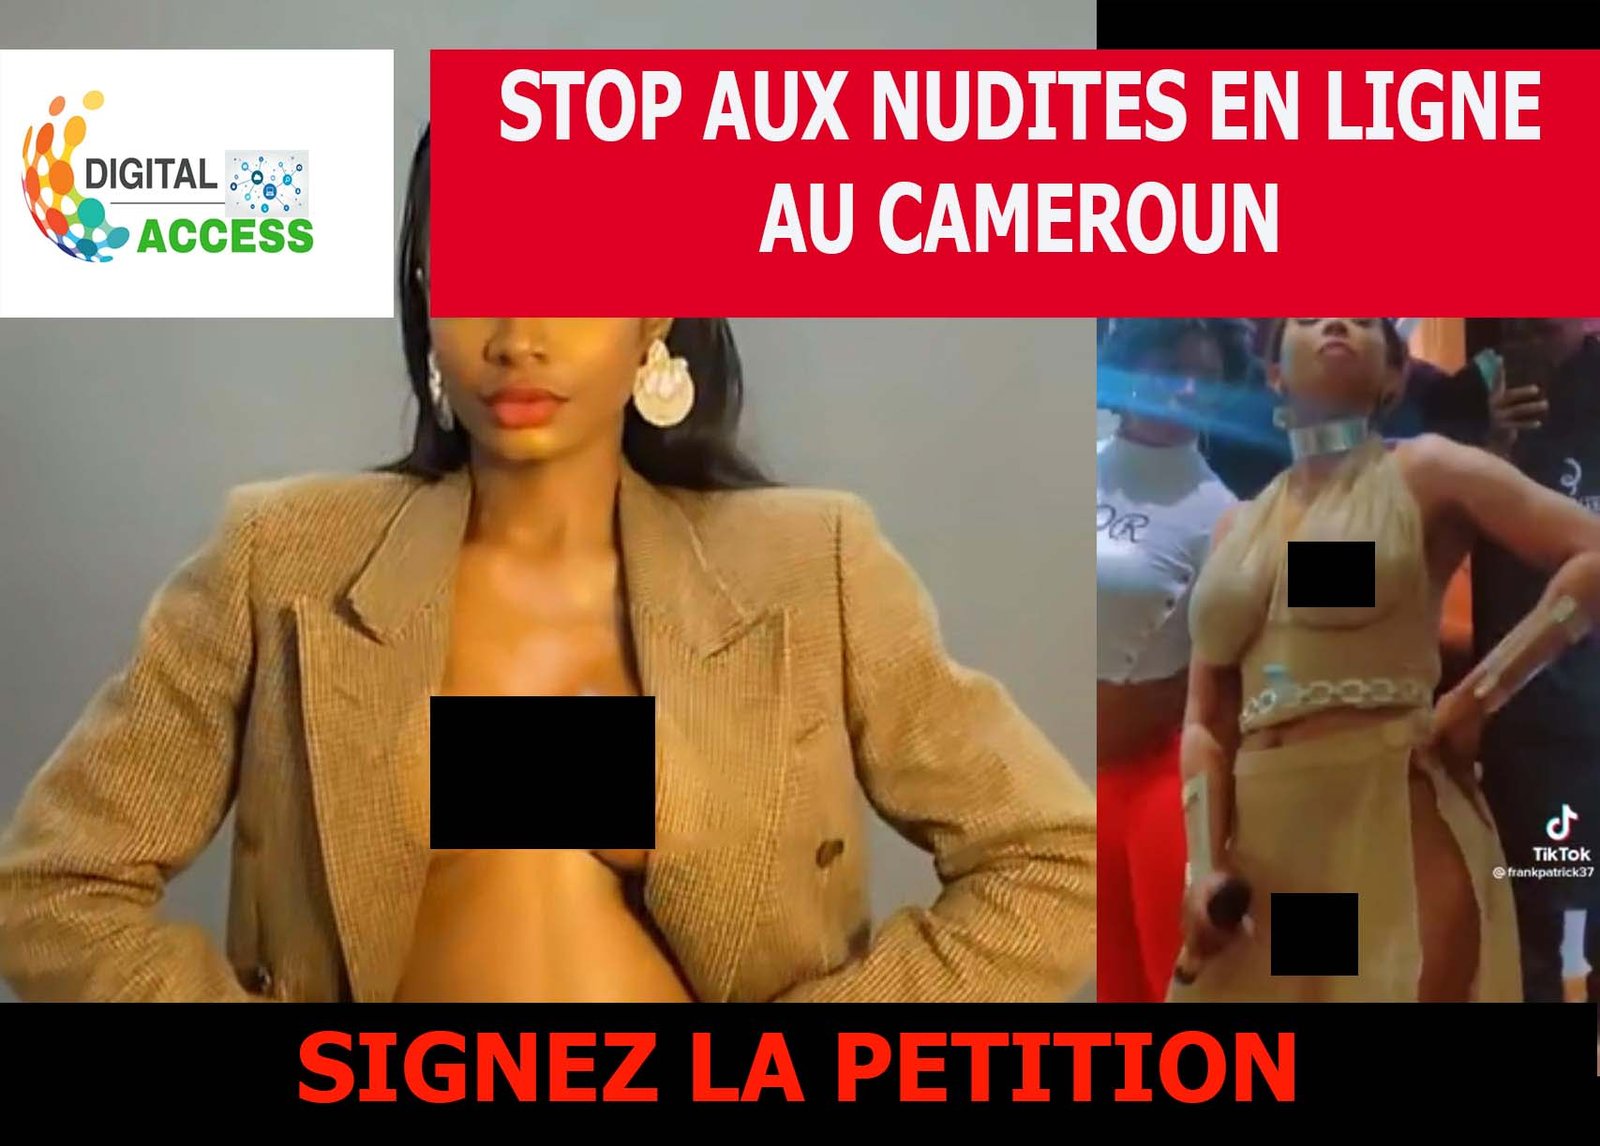 STOP AUX NUDITES EN LIGNE AU CAMEROUN